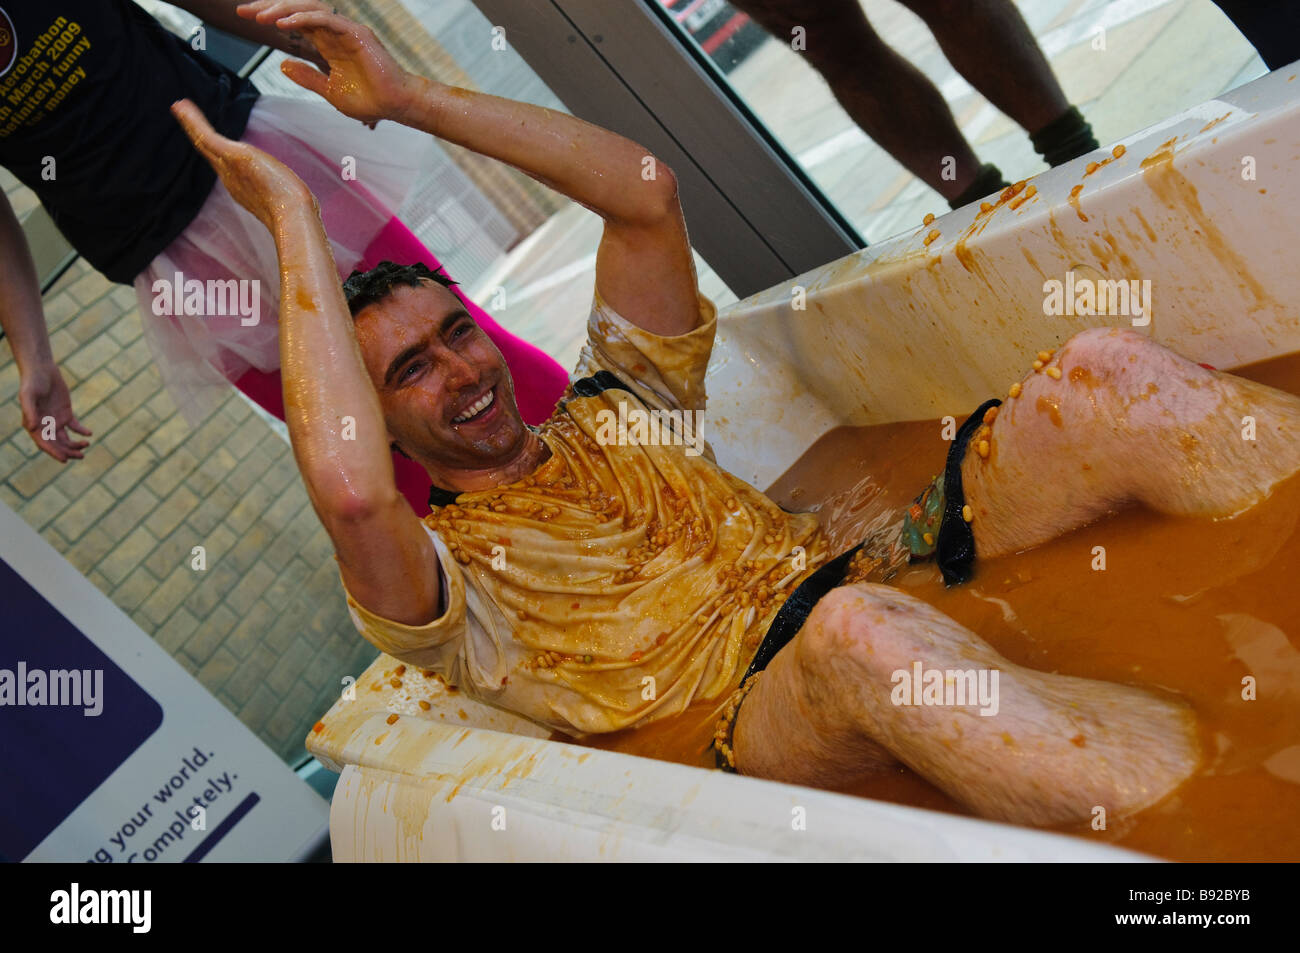 L'homme dans une baignoire pleine de haricots cuits au four Banque D'Images